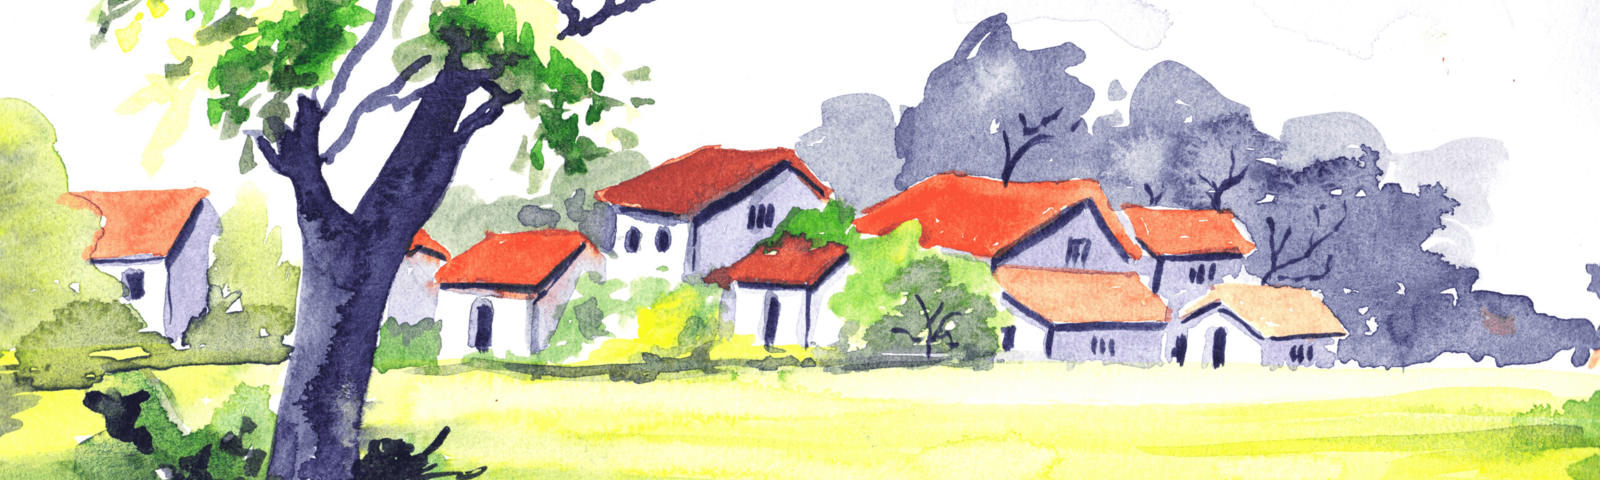 gemaltes Bild von Häusern in ländlicher Region